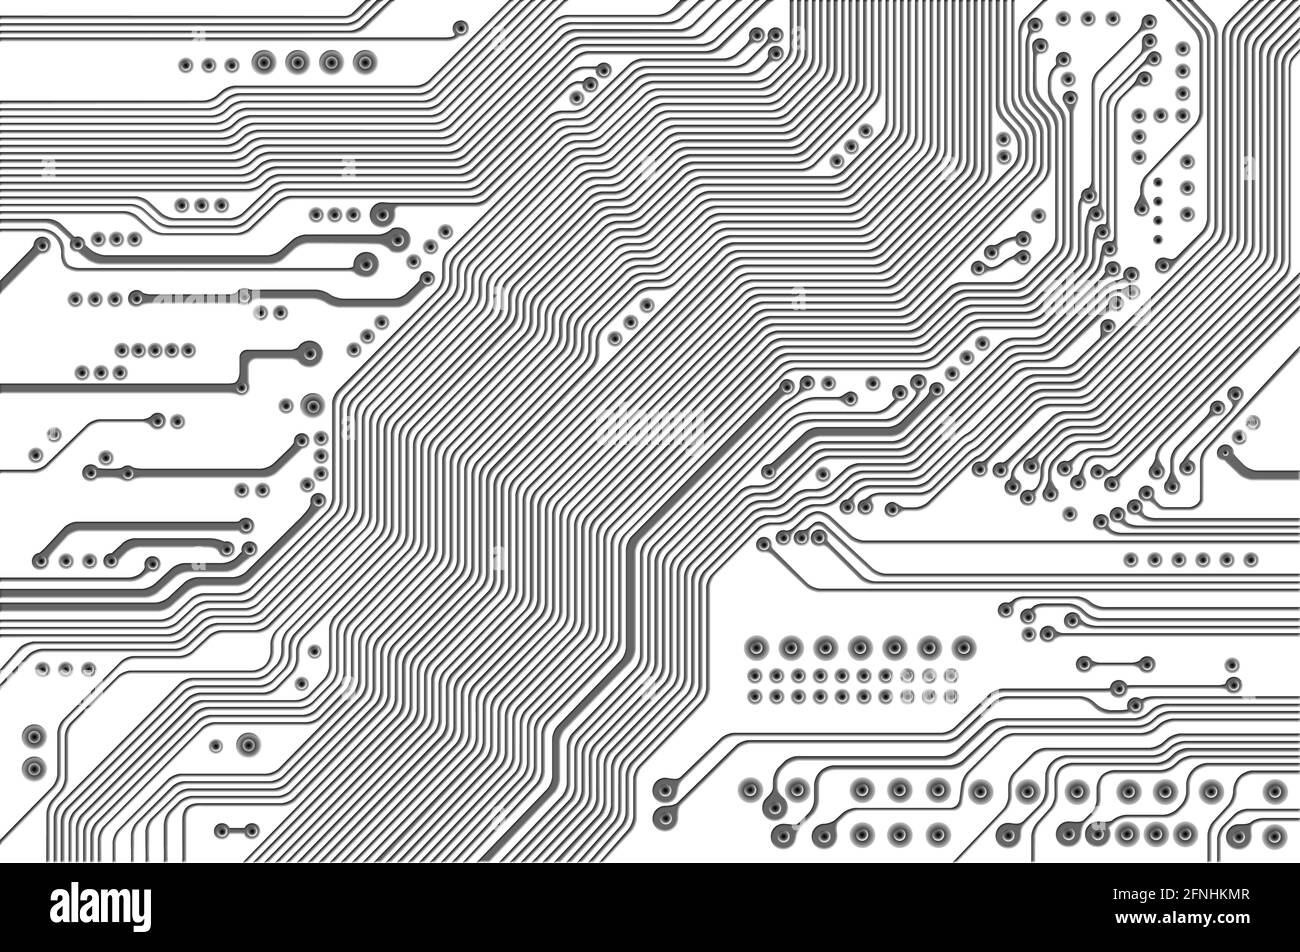 Détail abstrait de la carte de circuit imprimé - texture technologique Banque D'Images